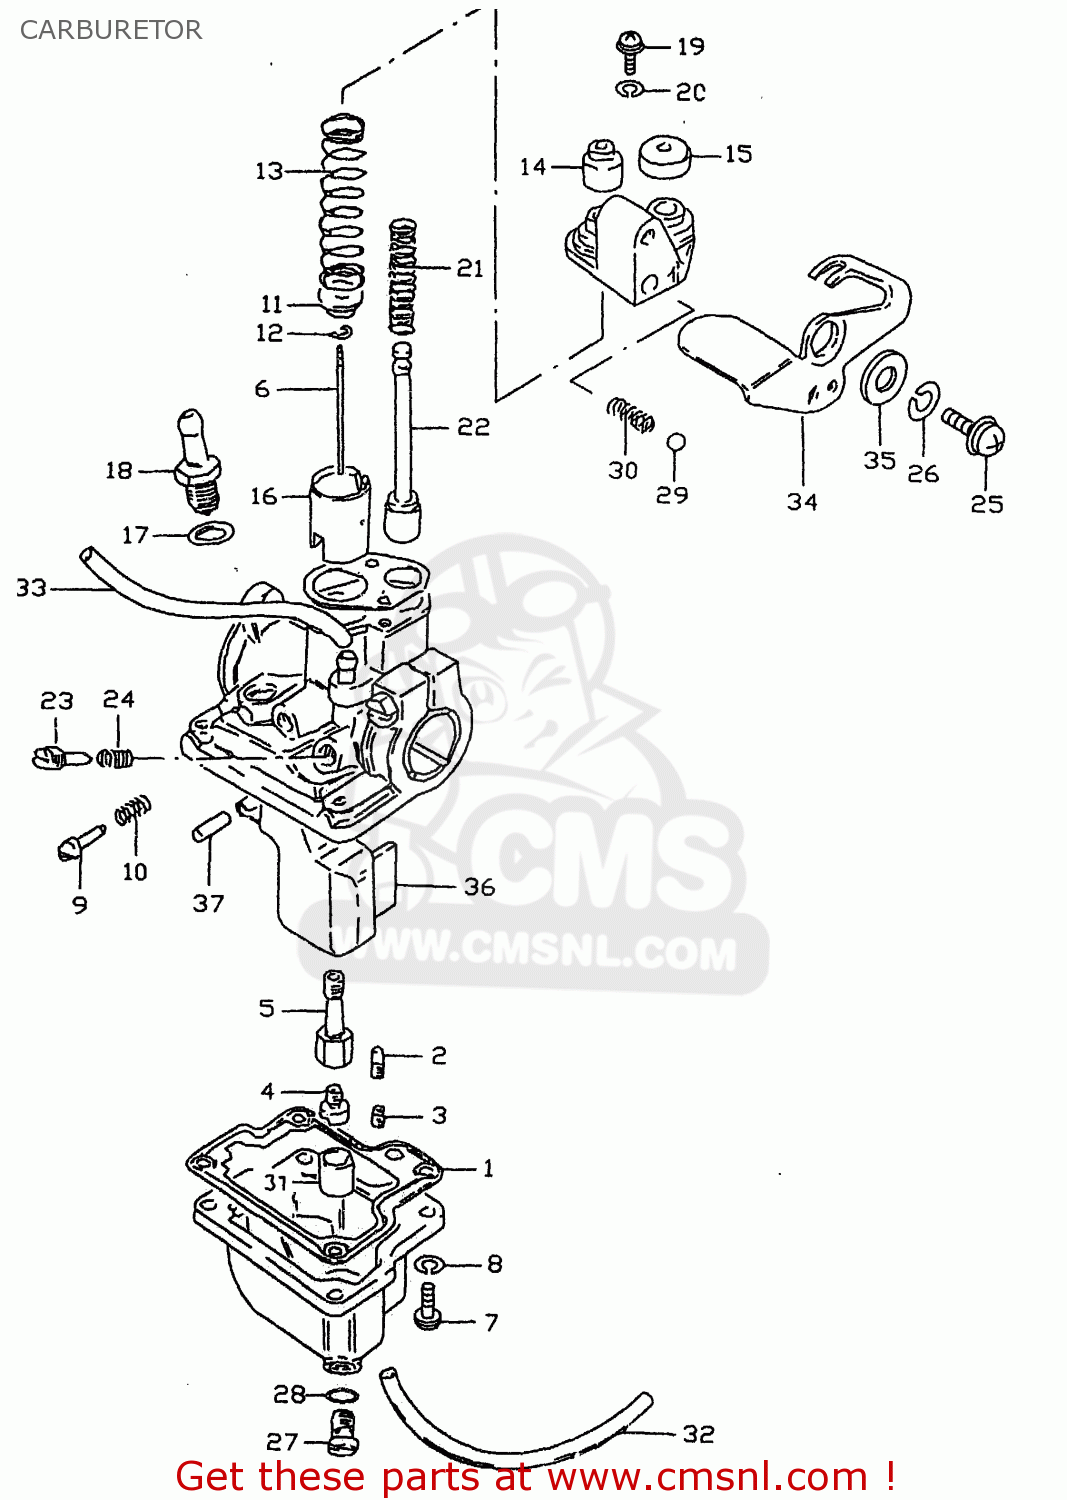 suzuki samurai carburetor diagram